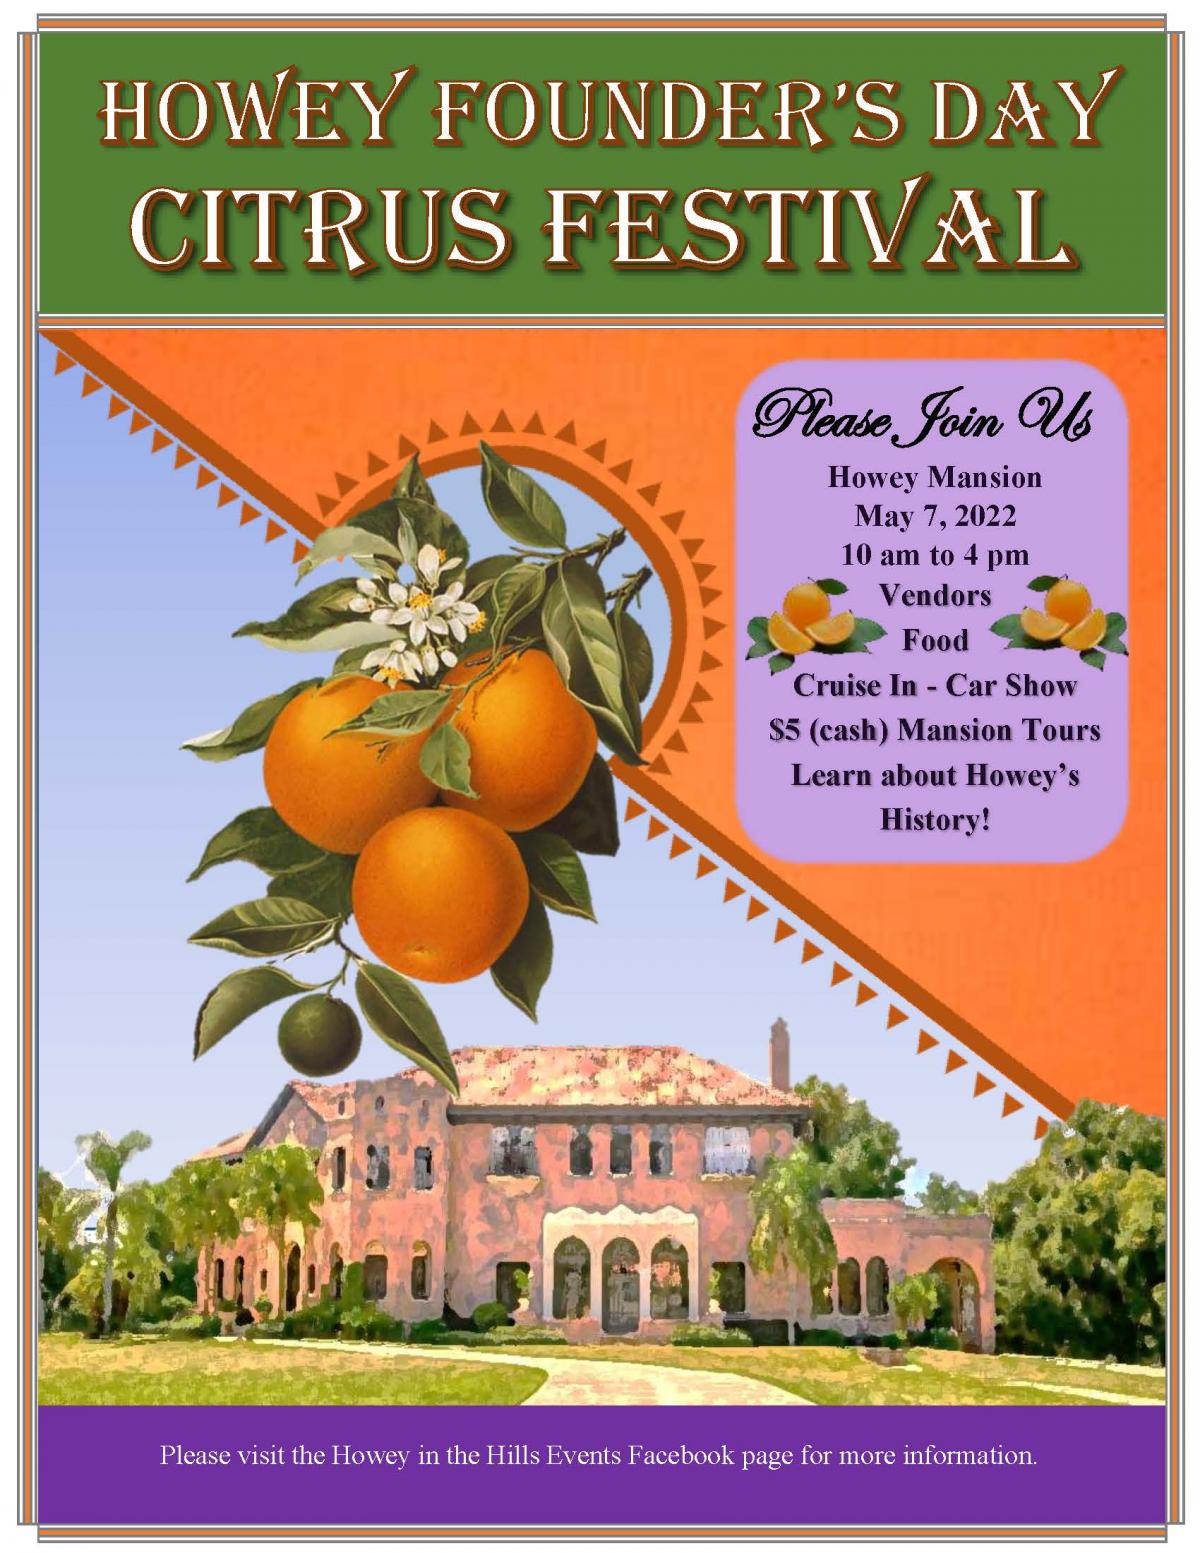 2022 Howey Founder's Day Citrus Festival